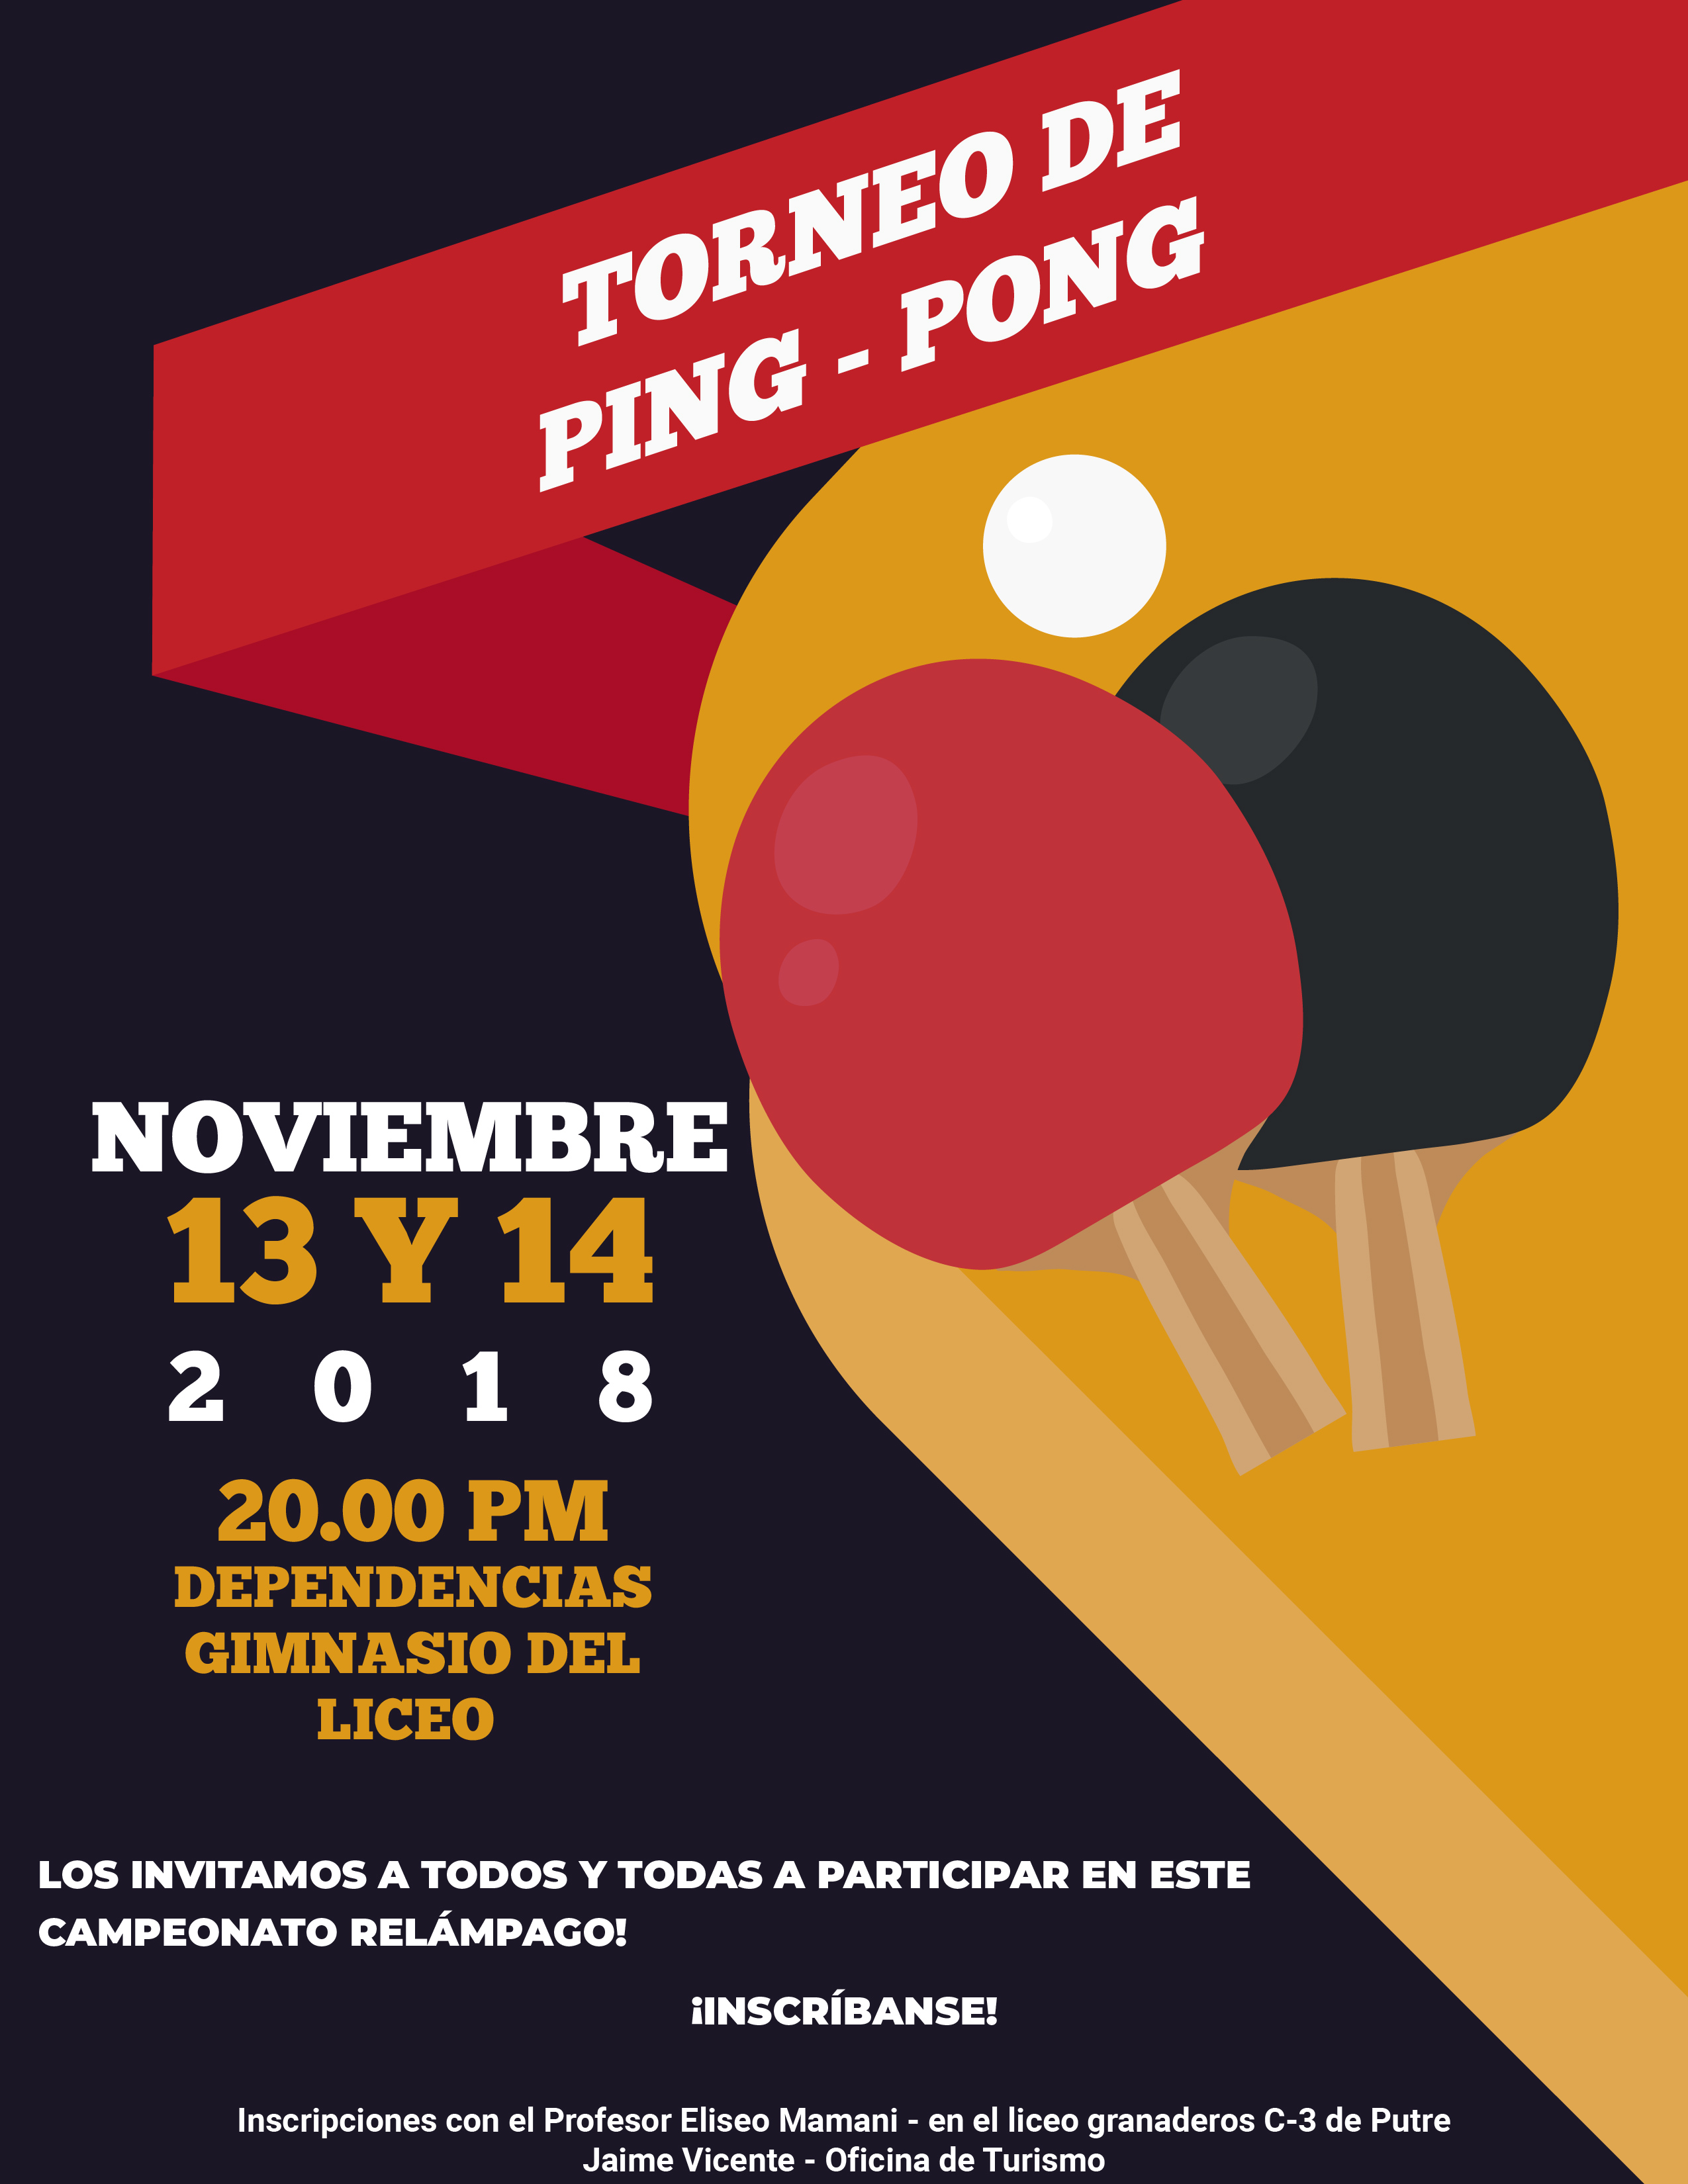 Torneo de Ping – Pong